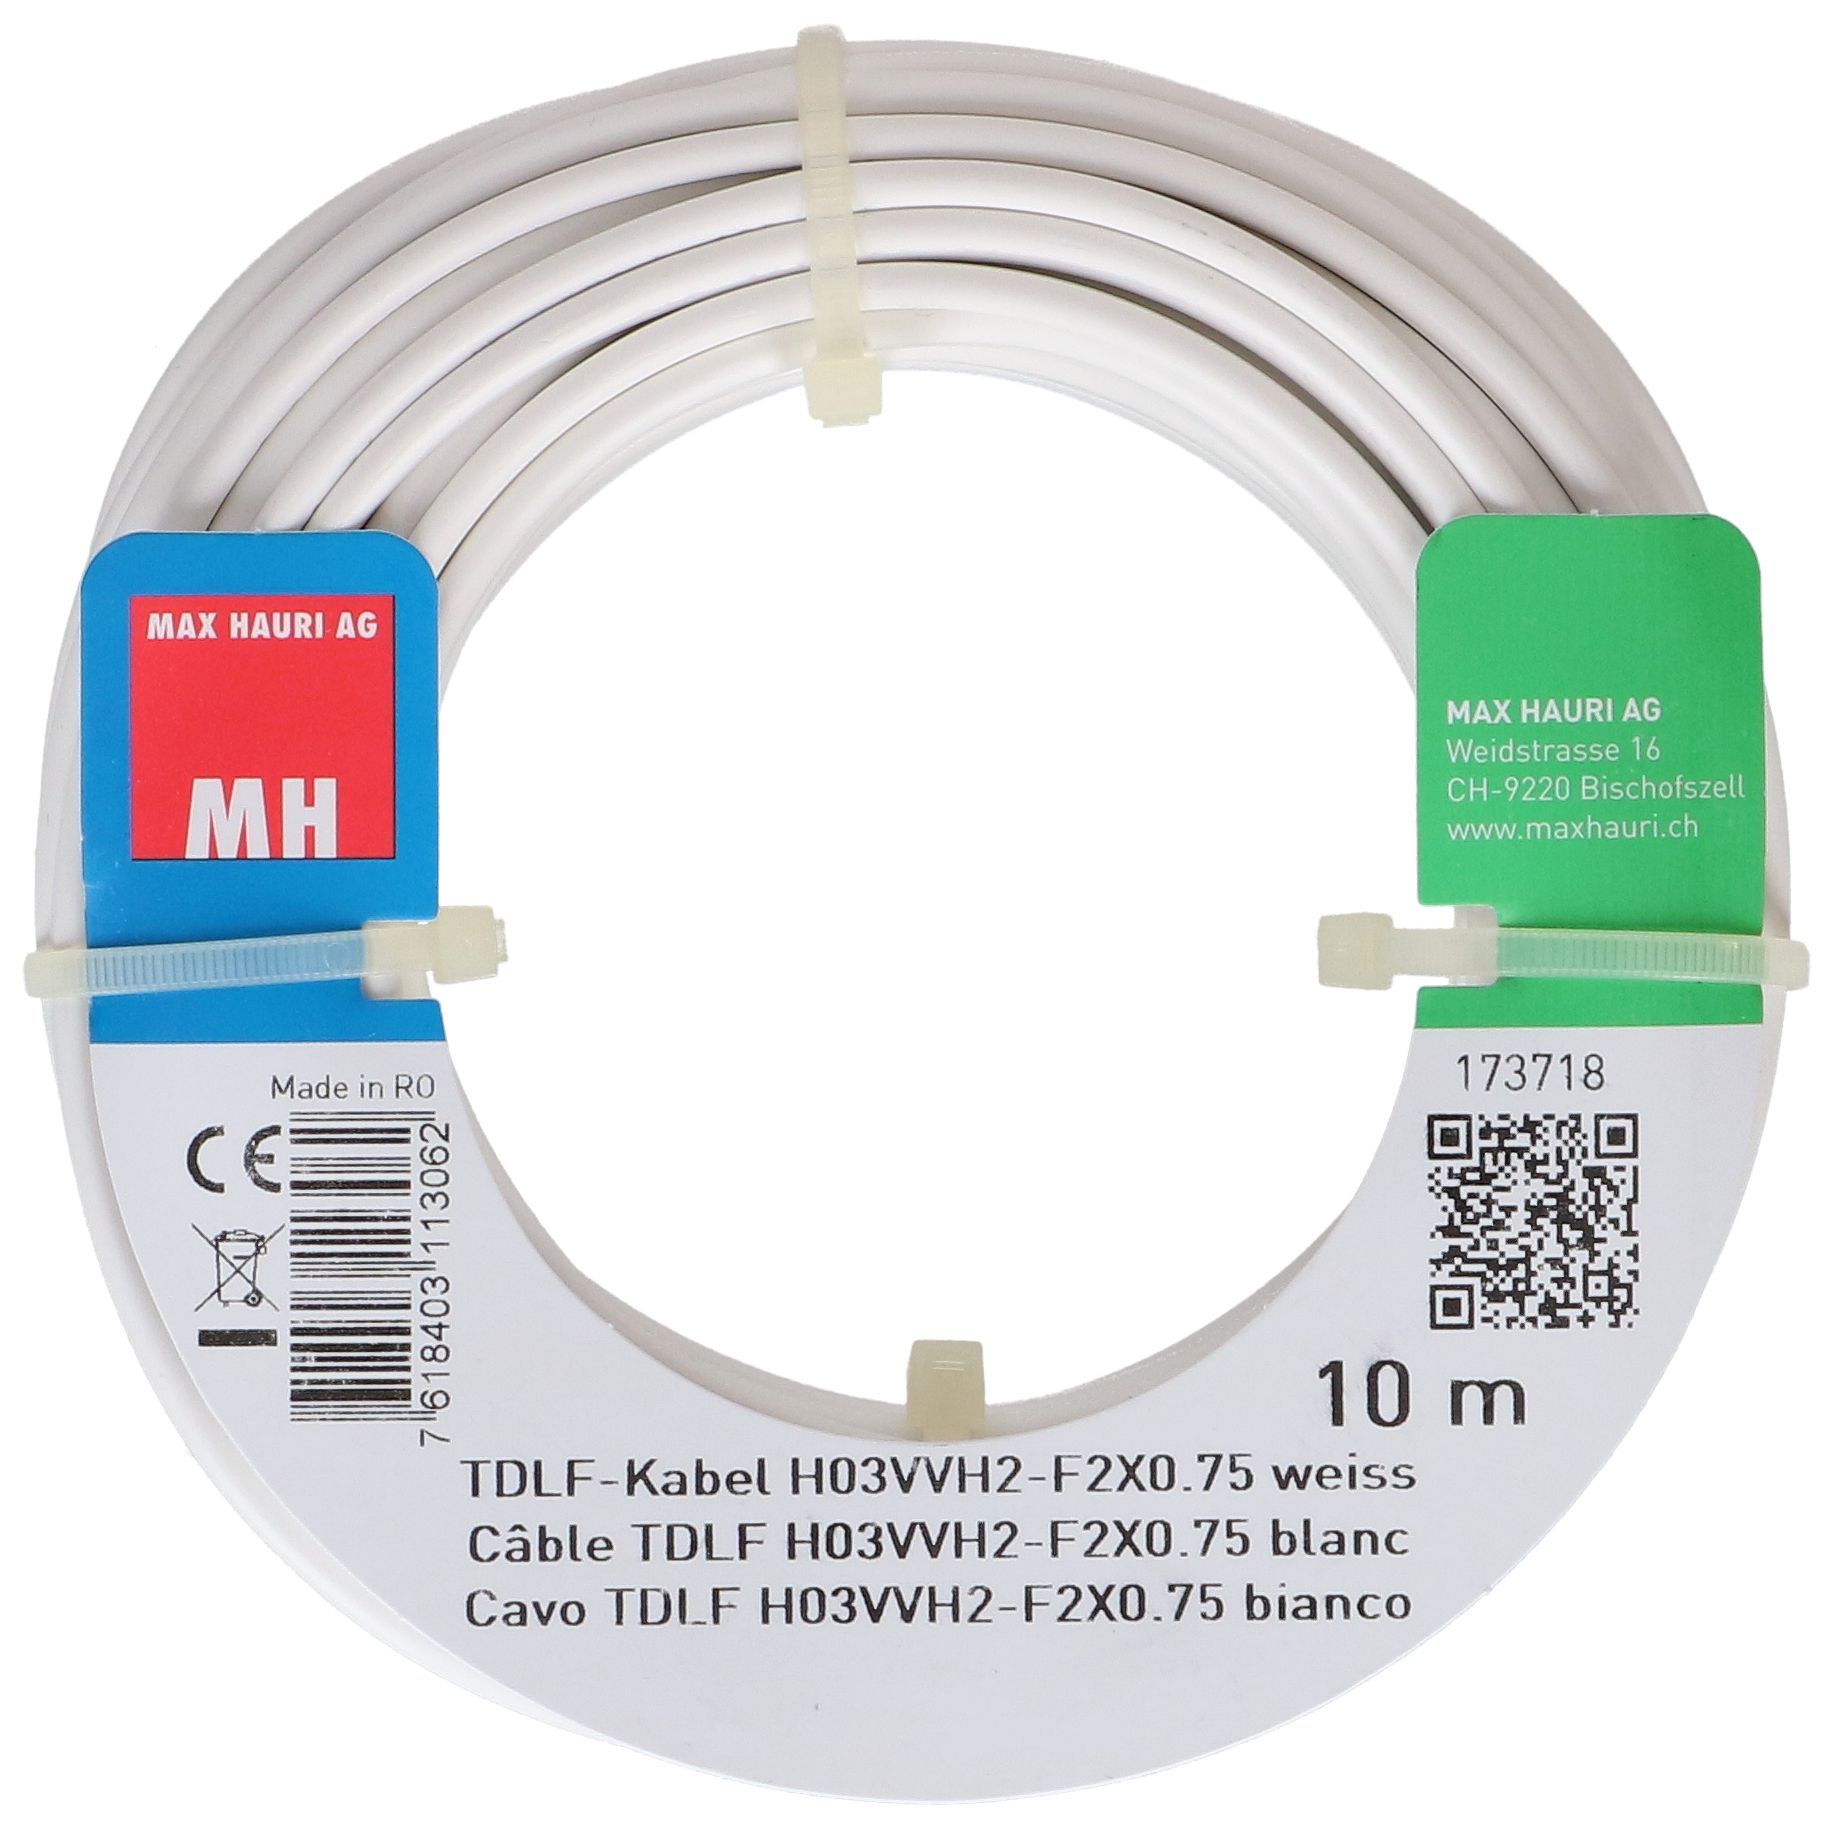 TDLF-Kabel H03VVH2-F2X0.75 10m weiss